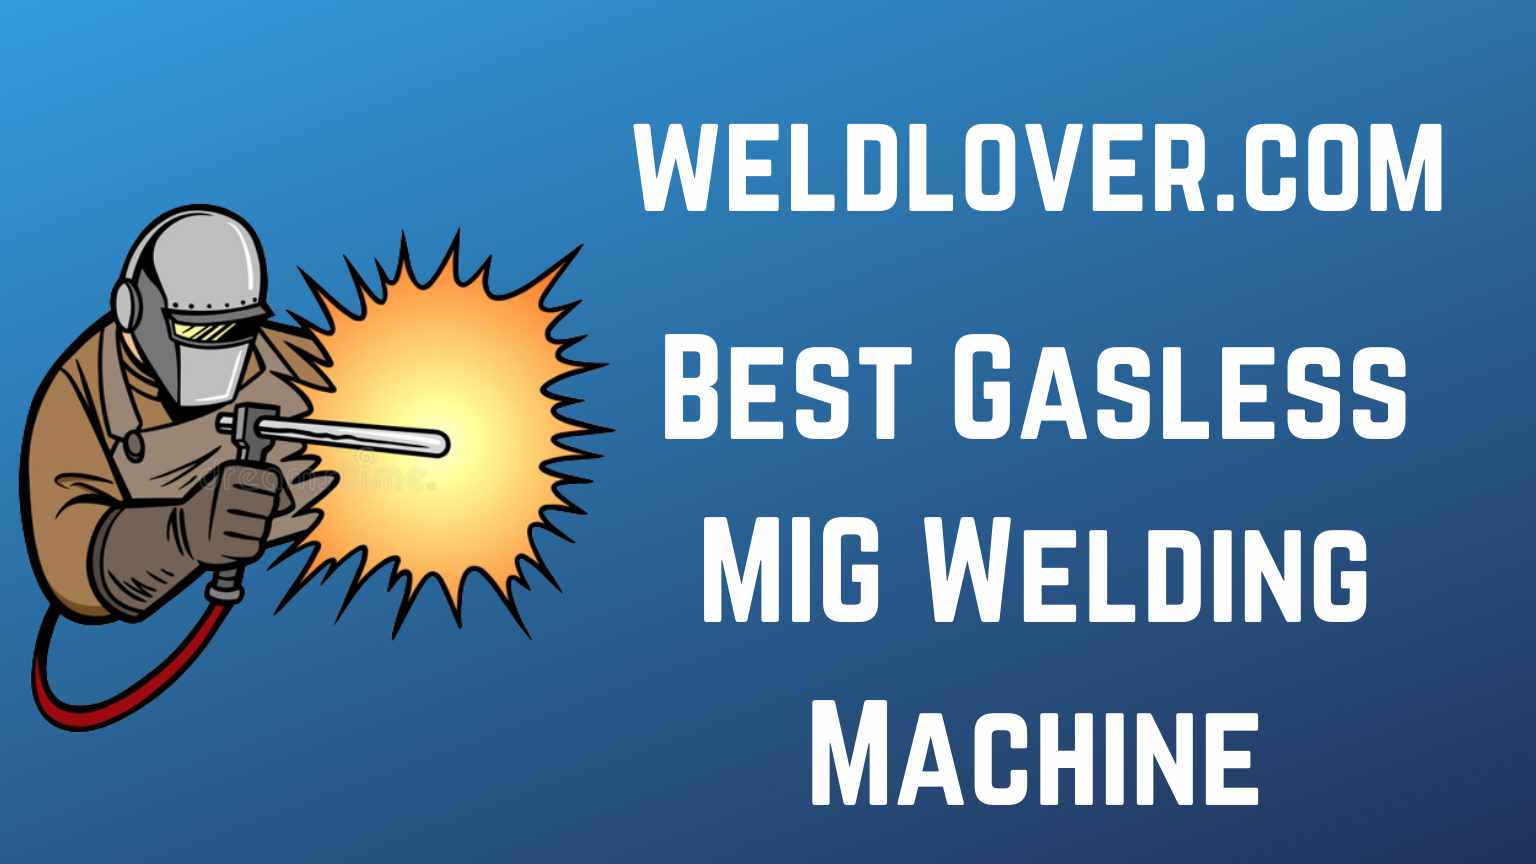 Best Gasless MIG Welding Machine